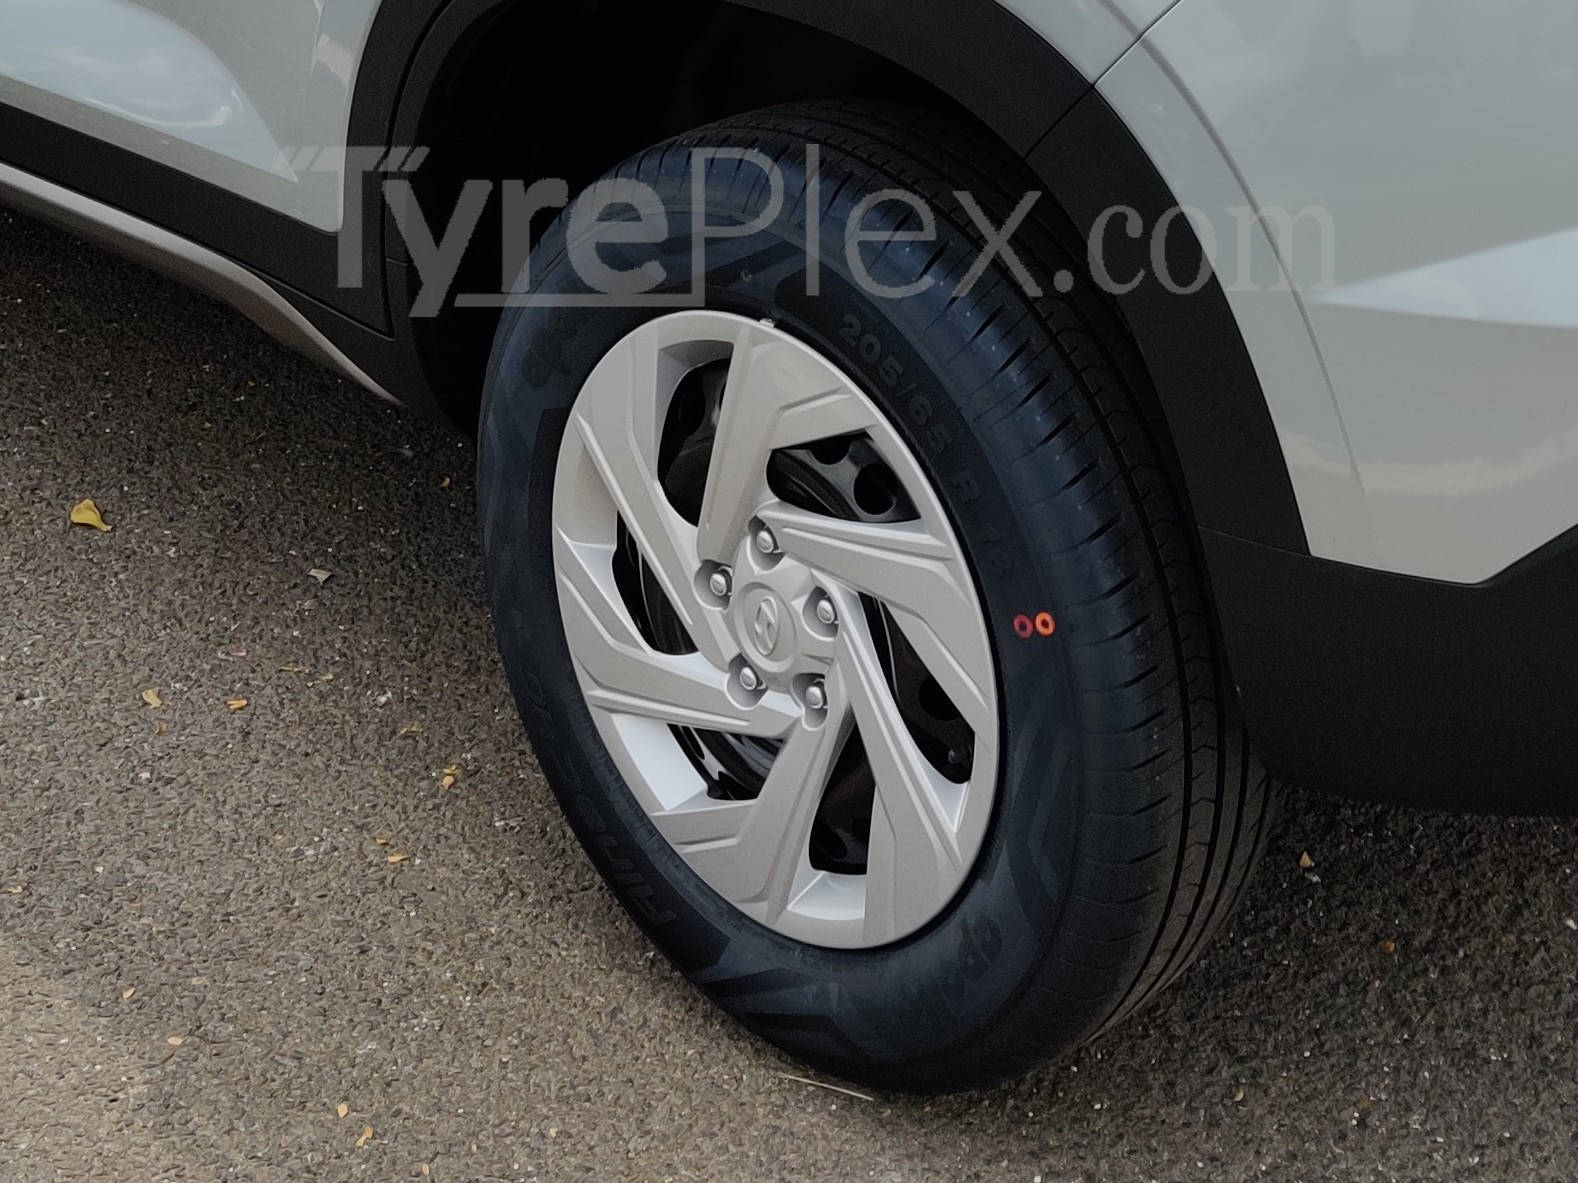 2020 Hyundai Creta Tyres And Alloys All You Need To Know